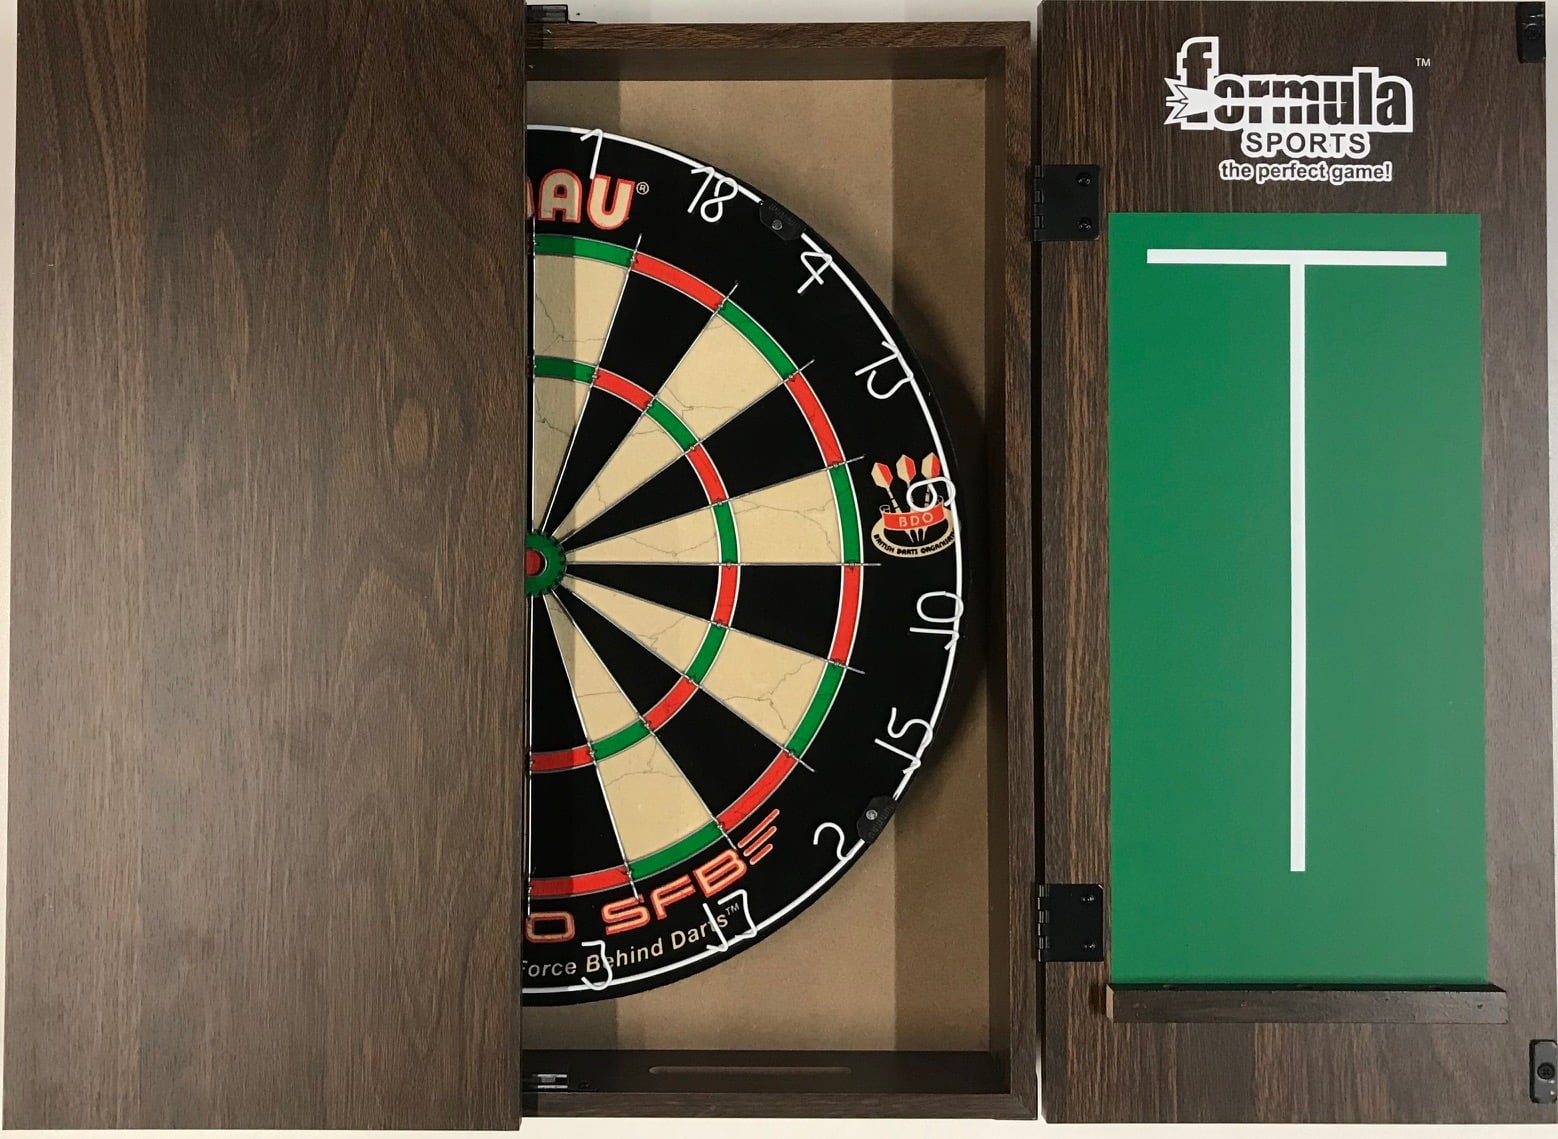 WINMAU PRO SFB Bristle Dart Board Set - Walnut Cabinet - 6 x Darts